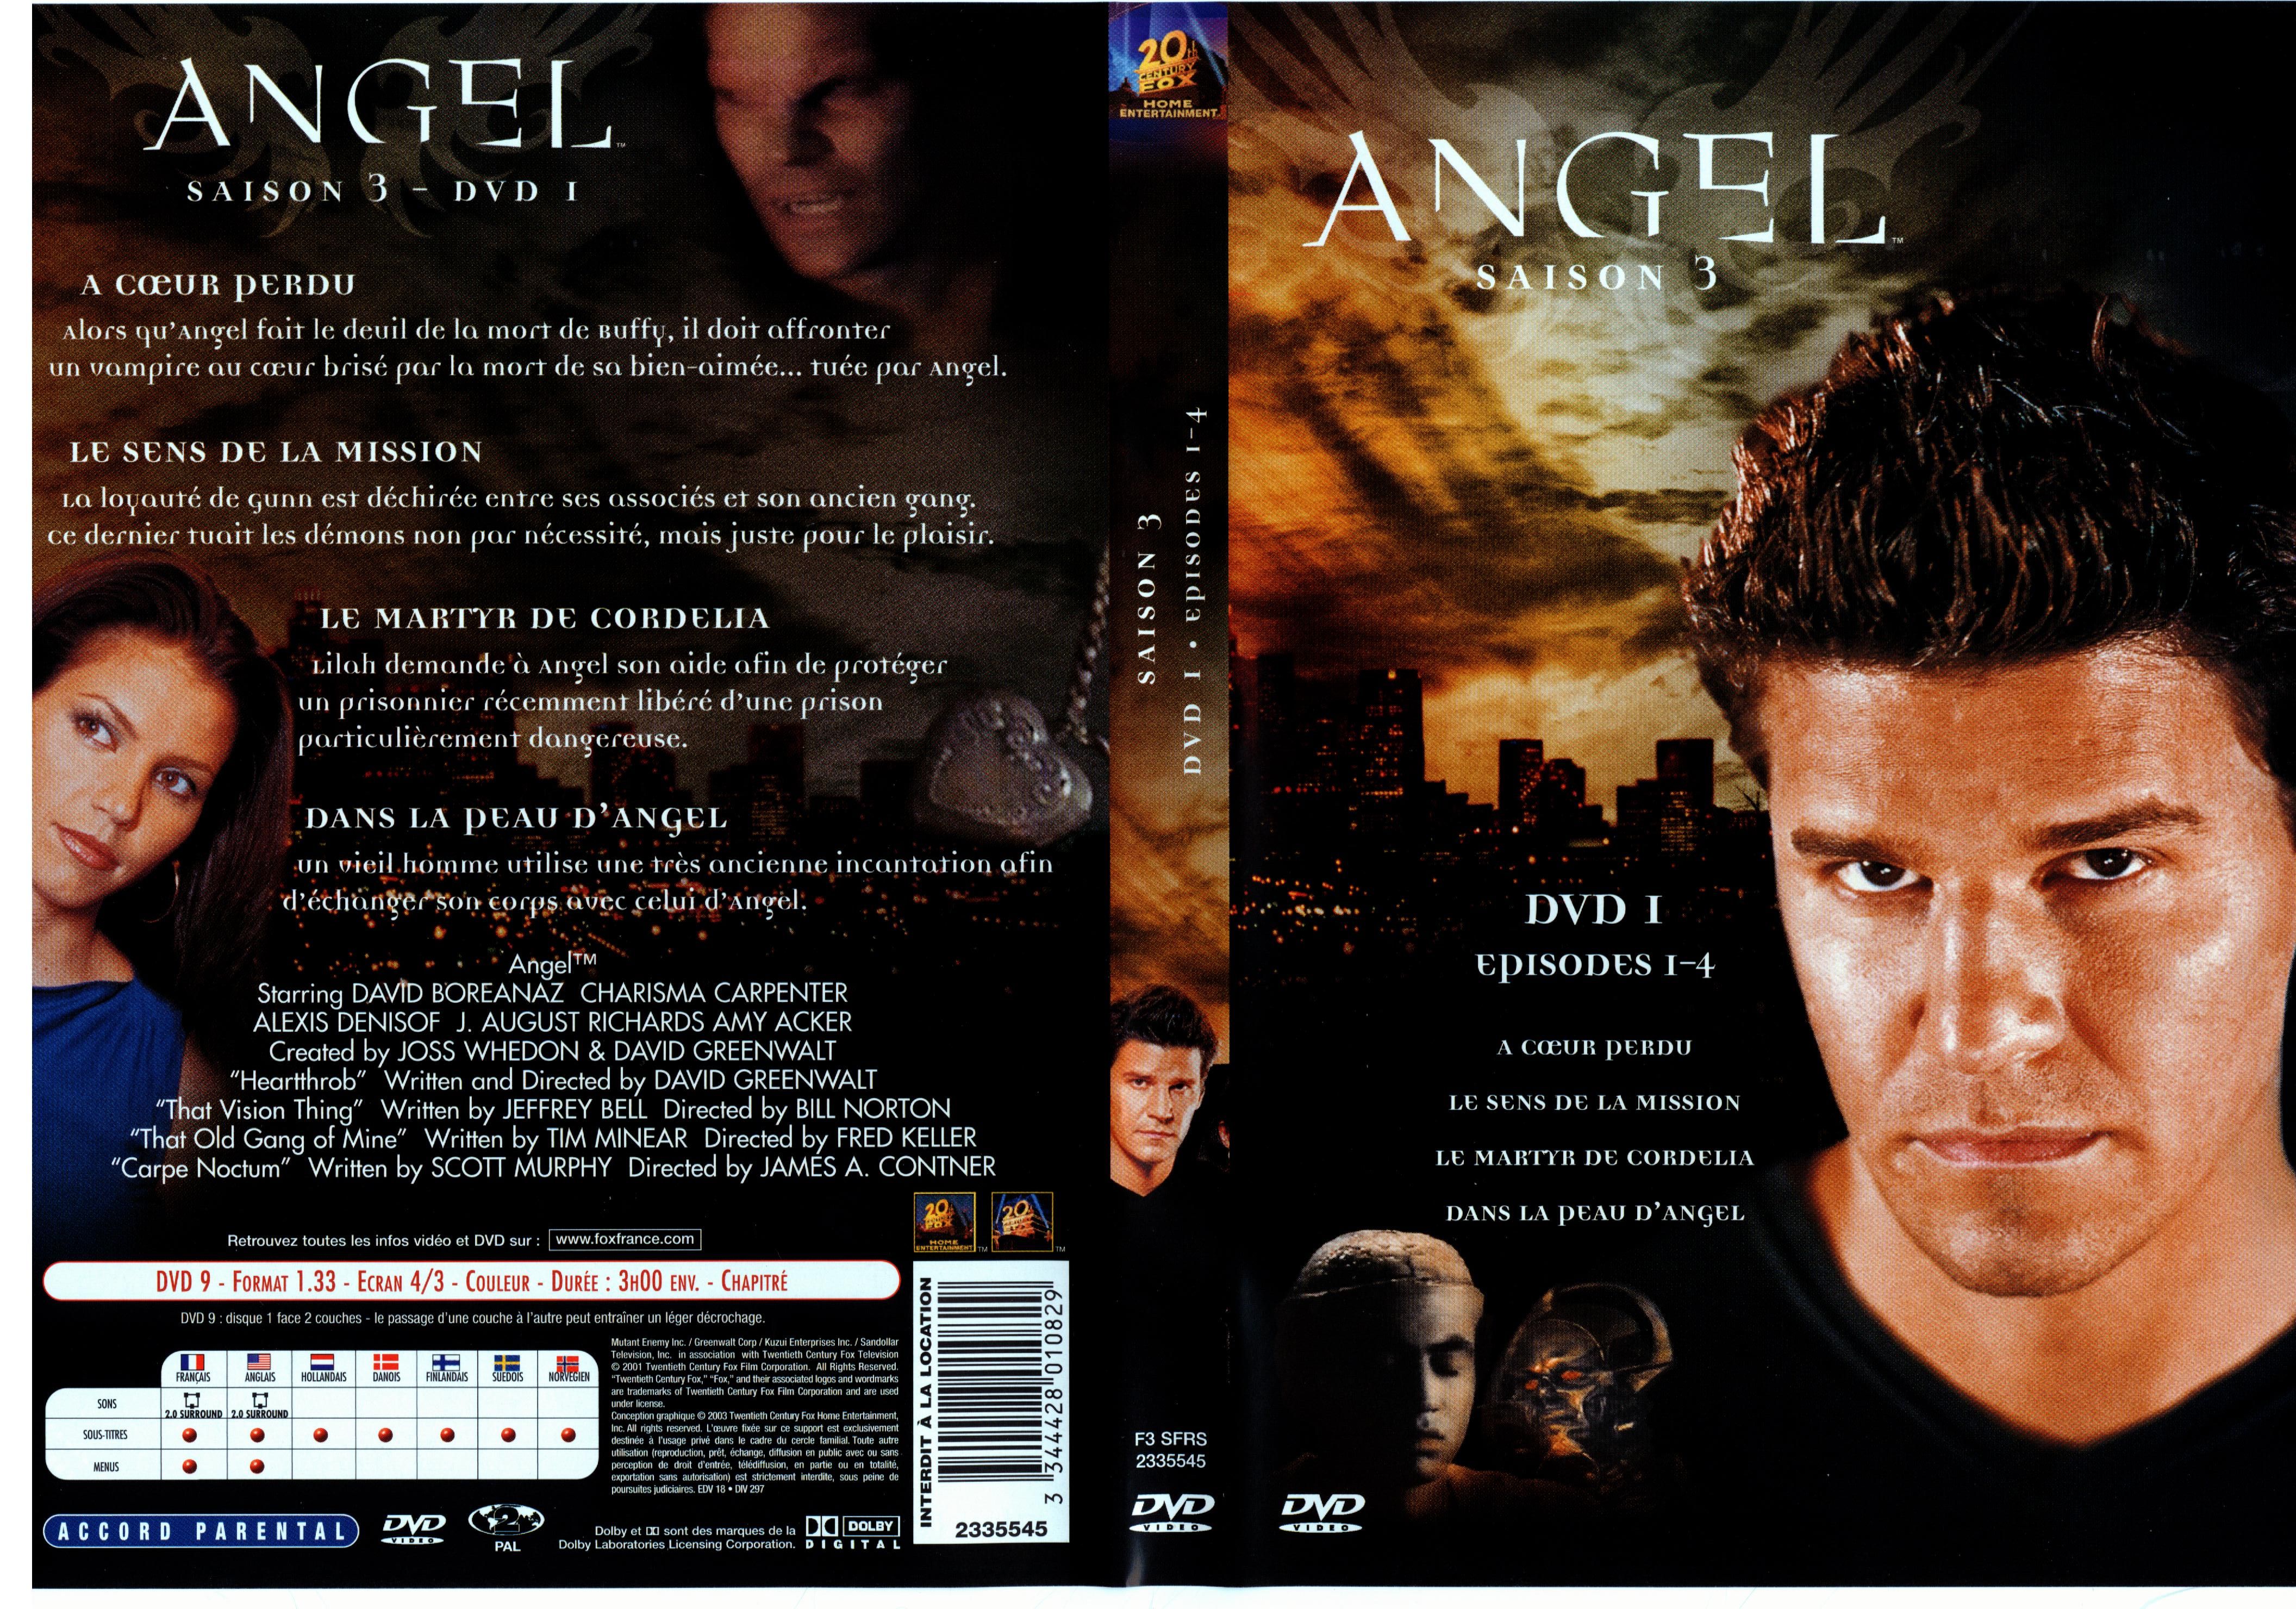 Jaquette DVD Angel Saison 3 dvd 1